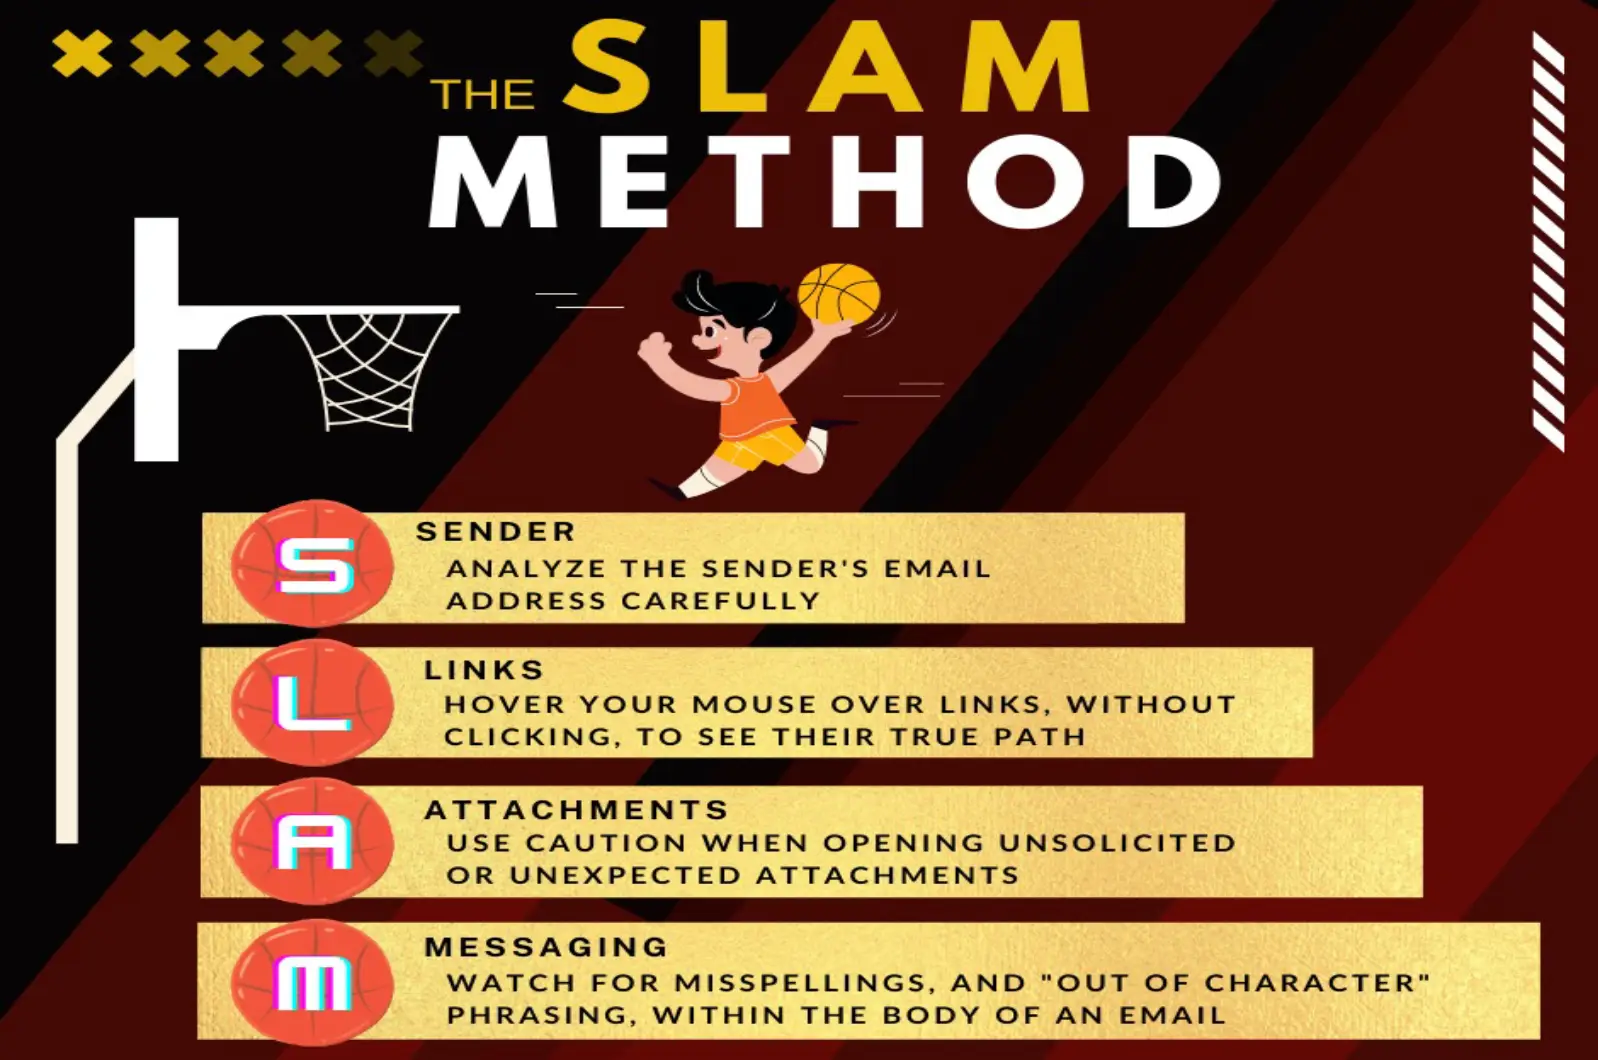 The SLAM Method for identifying Phishing Emails